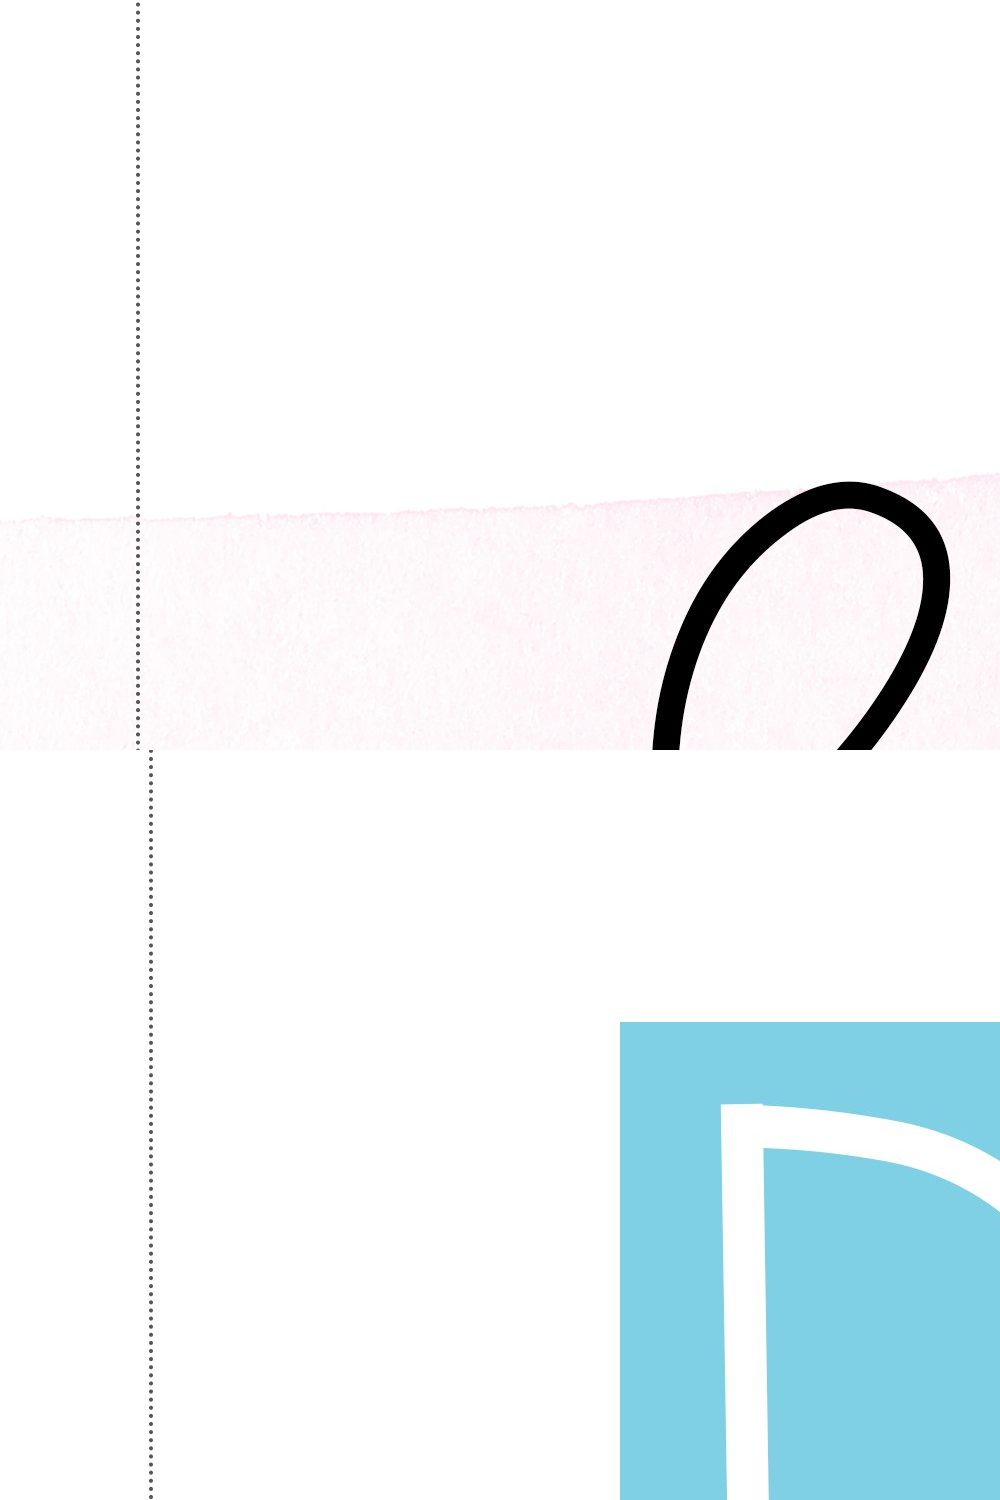 Floaties - A Cute Handwritten Font pinterest preview image.